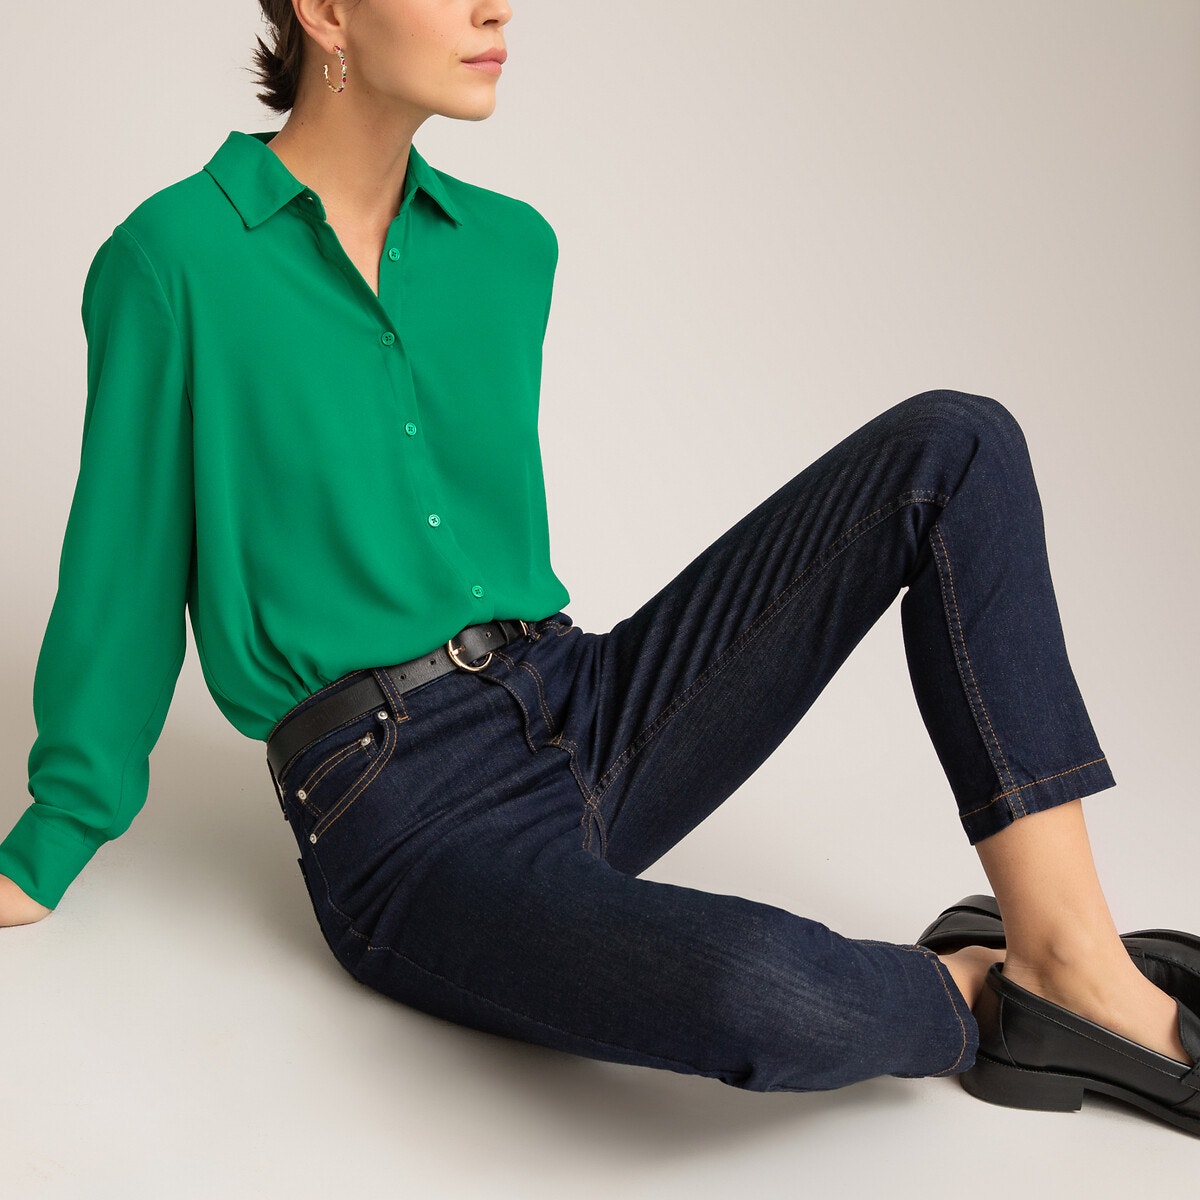 Το slim τζιν είναι βασικό κομμάτι στη γυναικεία γκαρνταρόμπα. Μακραίνει το πόδι, κολακεύει τη σιλουέτα και φοριέται με όλα, όλες τις ώρες. Προσαρμόζεται σε όλα τα στυλ.Περιγραφή: - Παντελόνι slim jeans - Κανονική μέσηΣύνθεση και συντήρηση: - 98% βαμβάκι, 2% ελαστάνη - Πλύσιμο στους 30°C στο πρόγραμμα για ευαίσθητα - Σιδέρωμα σε μέτρια θερμοκρασία - Στεγνωτήριο σε χαμηλή ταχύτητα - Απαγορεύεται το στεγνό καθάρισμαΠερισσότερες λεπτομέρειες: - Μήκος καβάλου 62 εκ., στα μπατζάκια 15 εκ. για το μέγεθος 38